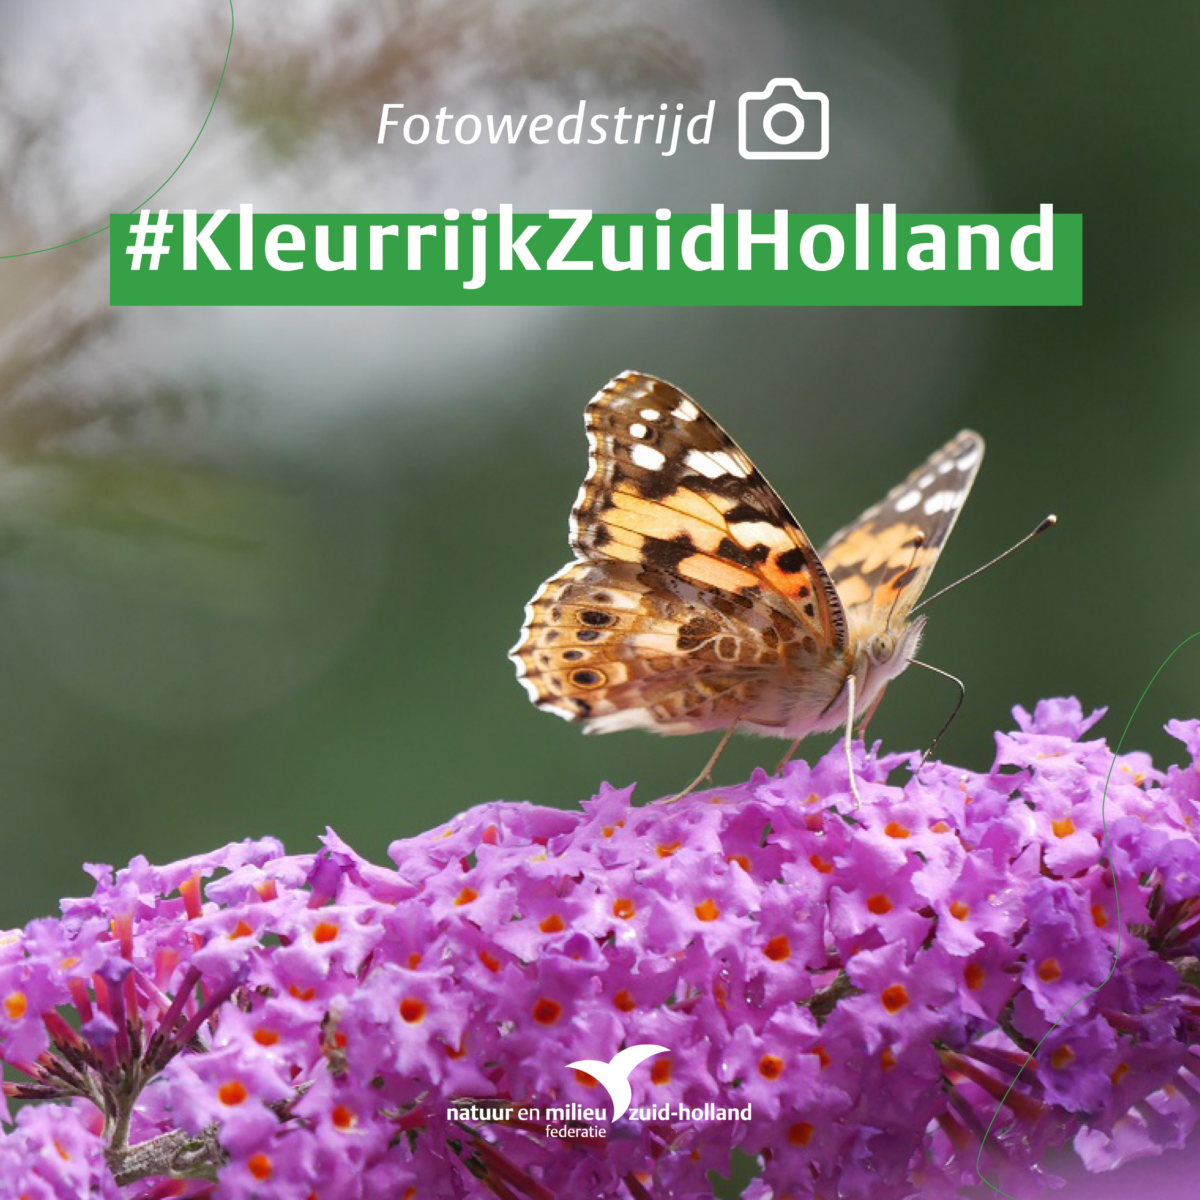 Fotowedstrijd Kleurrijk Zuid-Holland van start